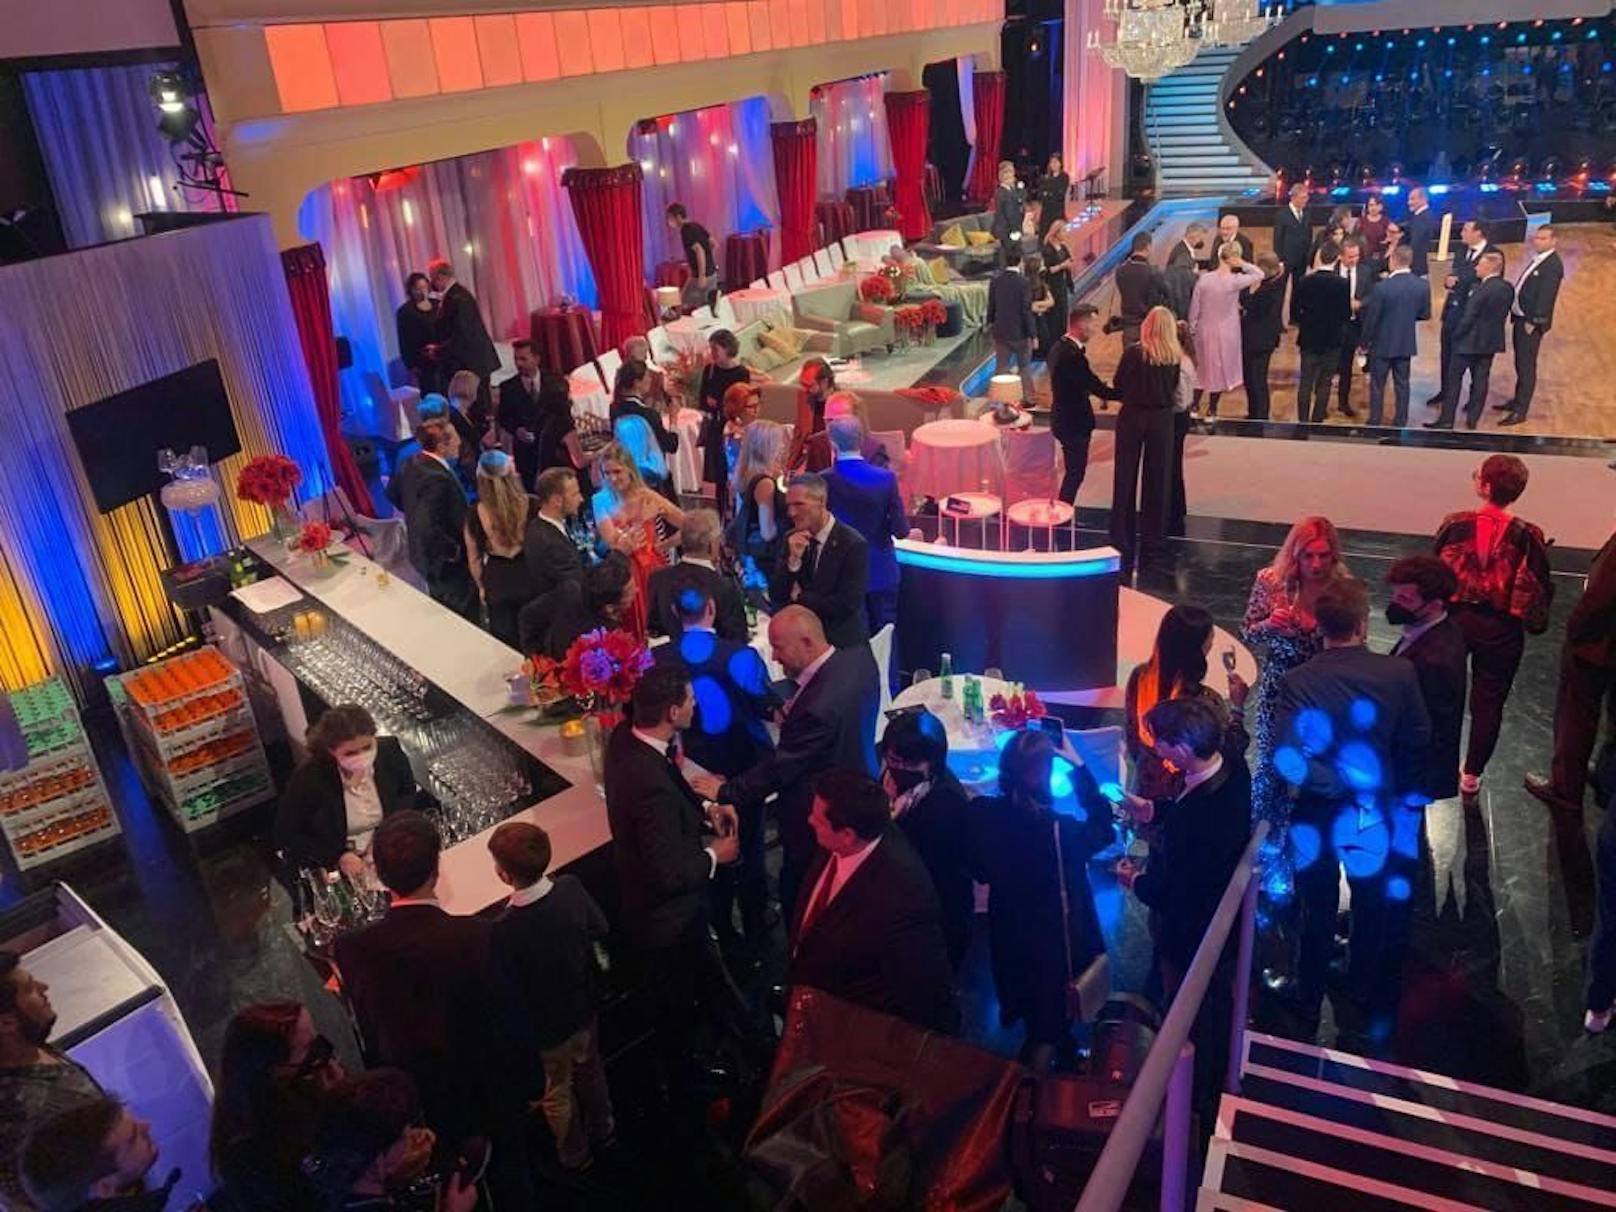 Ein Bild zeigt einen Ausschnitt der Aftershowparty nach der "Licht ins Dunkel"-Gala.